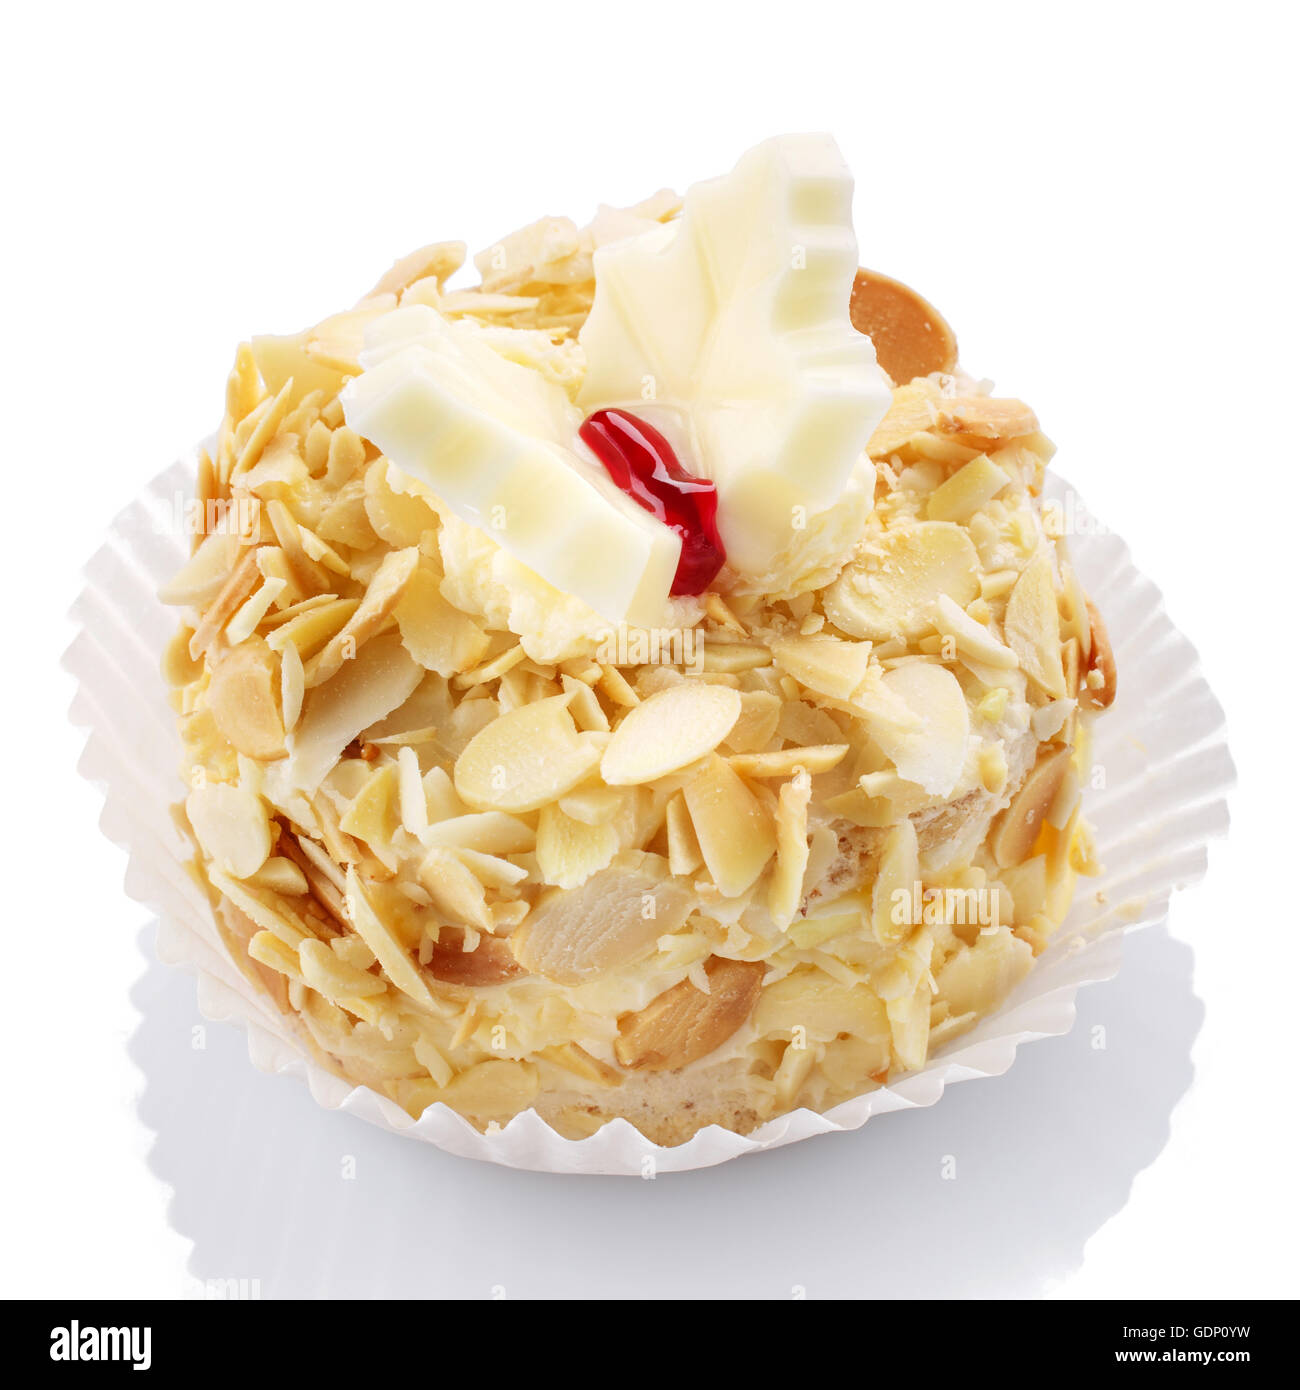 Gustosi piatti deliziosi snack dolce su sfondo bianco Foto Stock